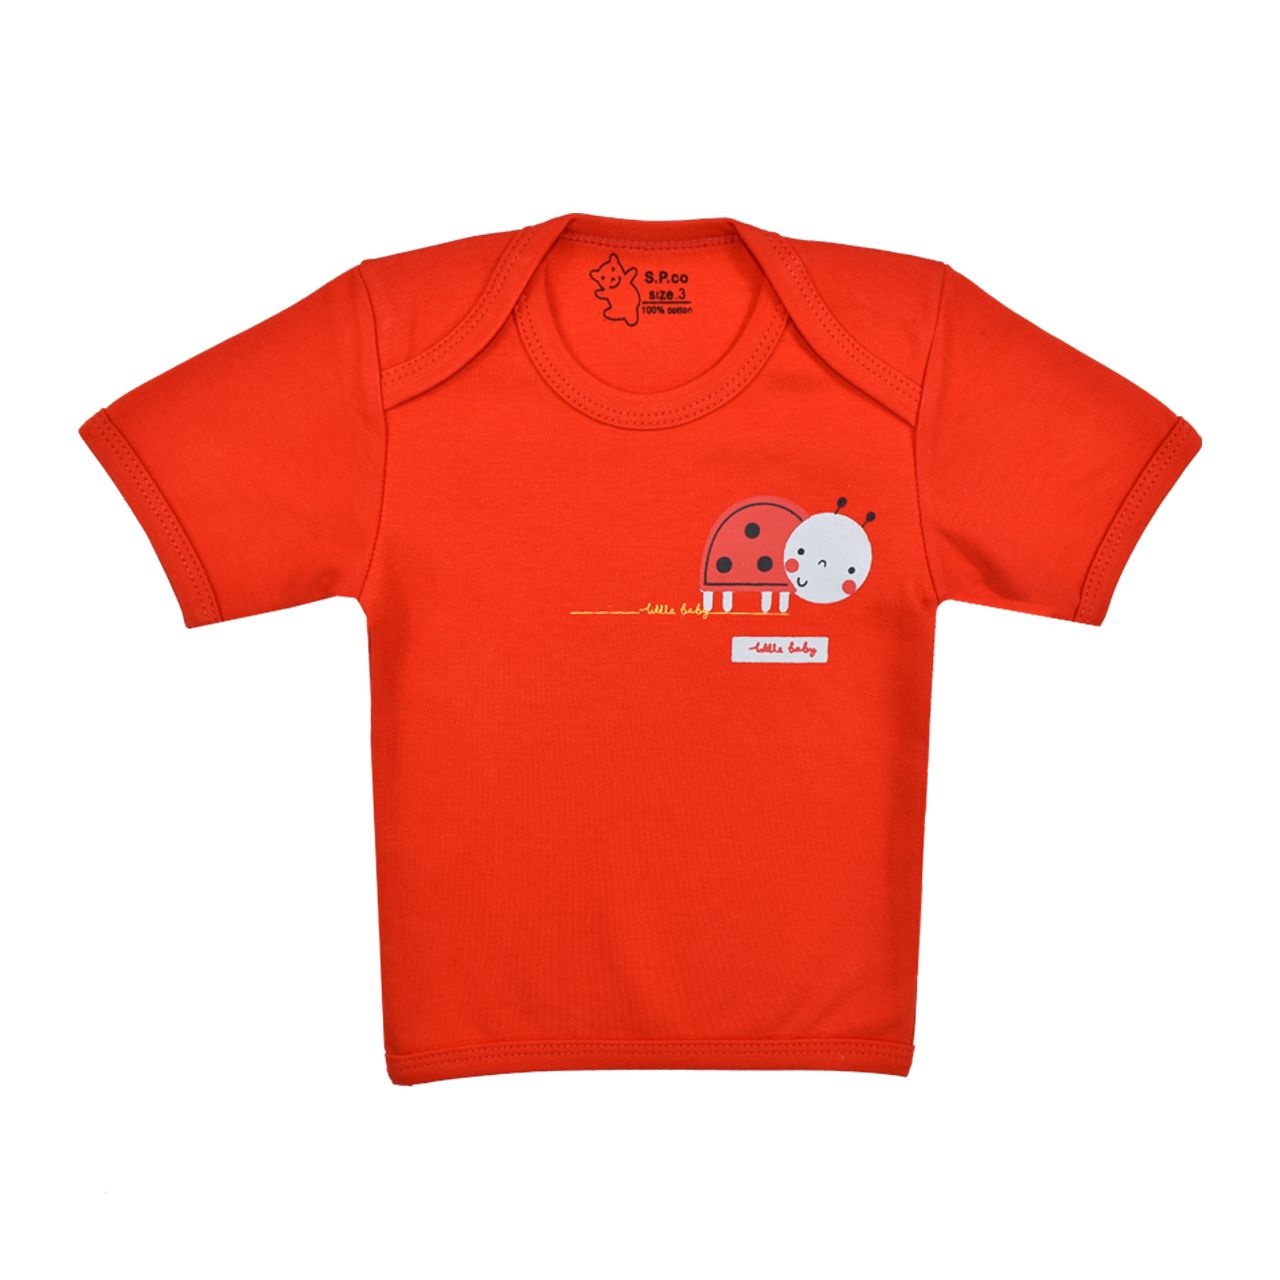 ست تی شرت آستین کوتاه و شلوار نوزادی اسپیکو مدل کفشدوزک کد 2 -  - 5